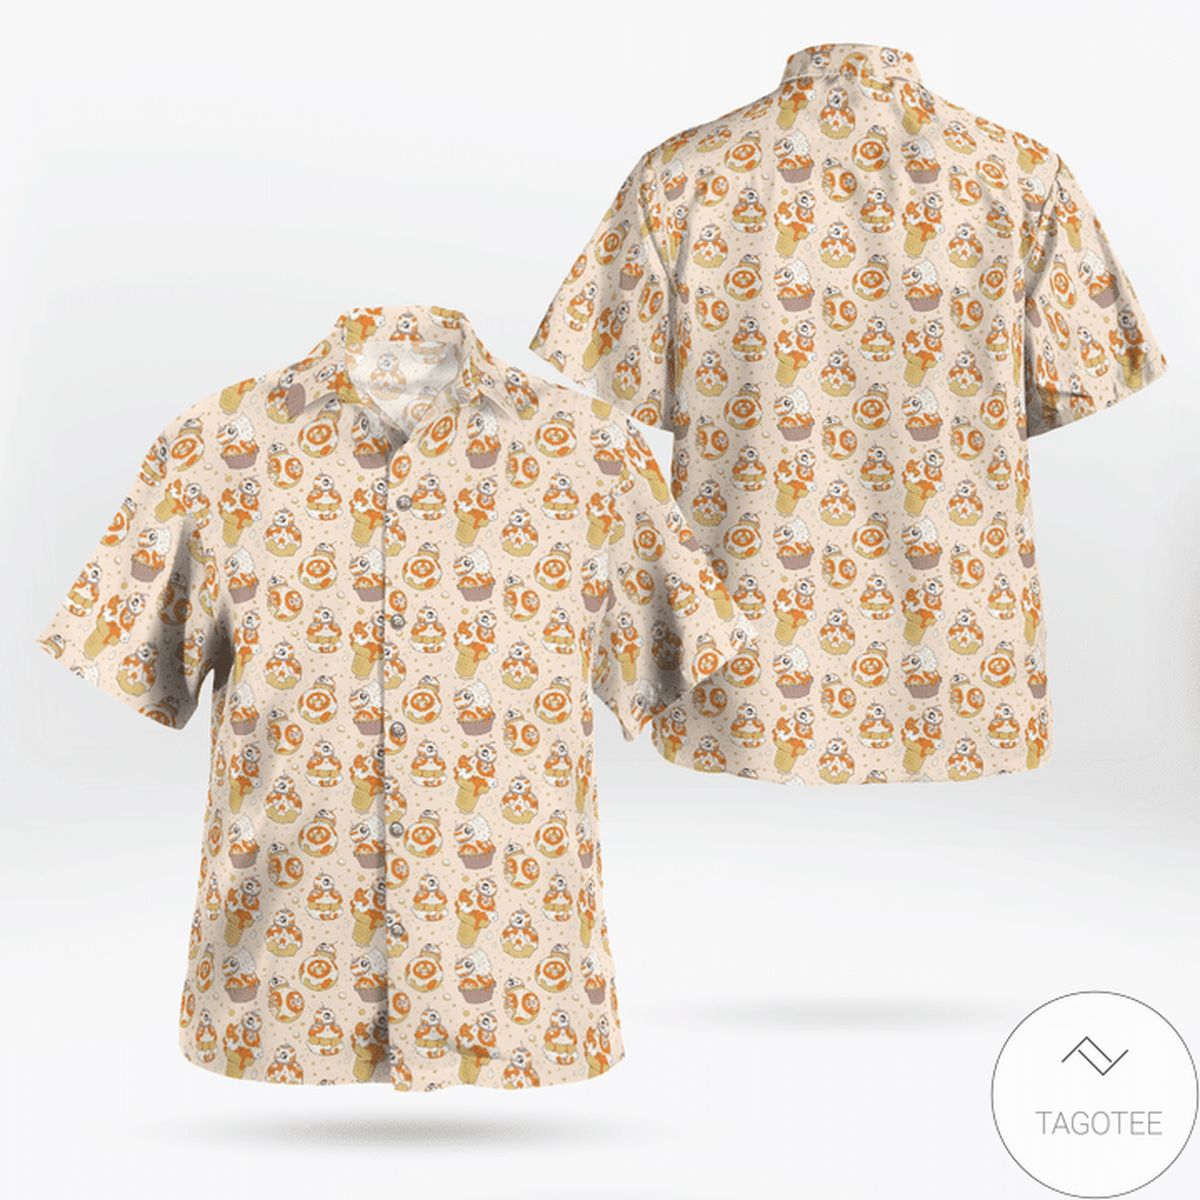 Star Wars Mini Pattern Printed Hawaiian Shirt